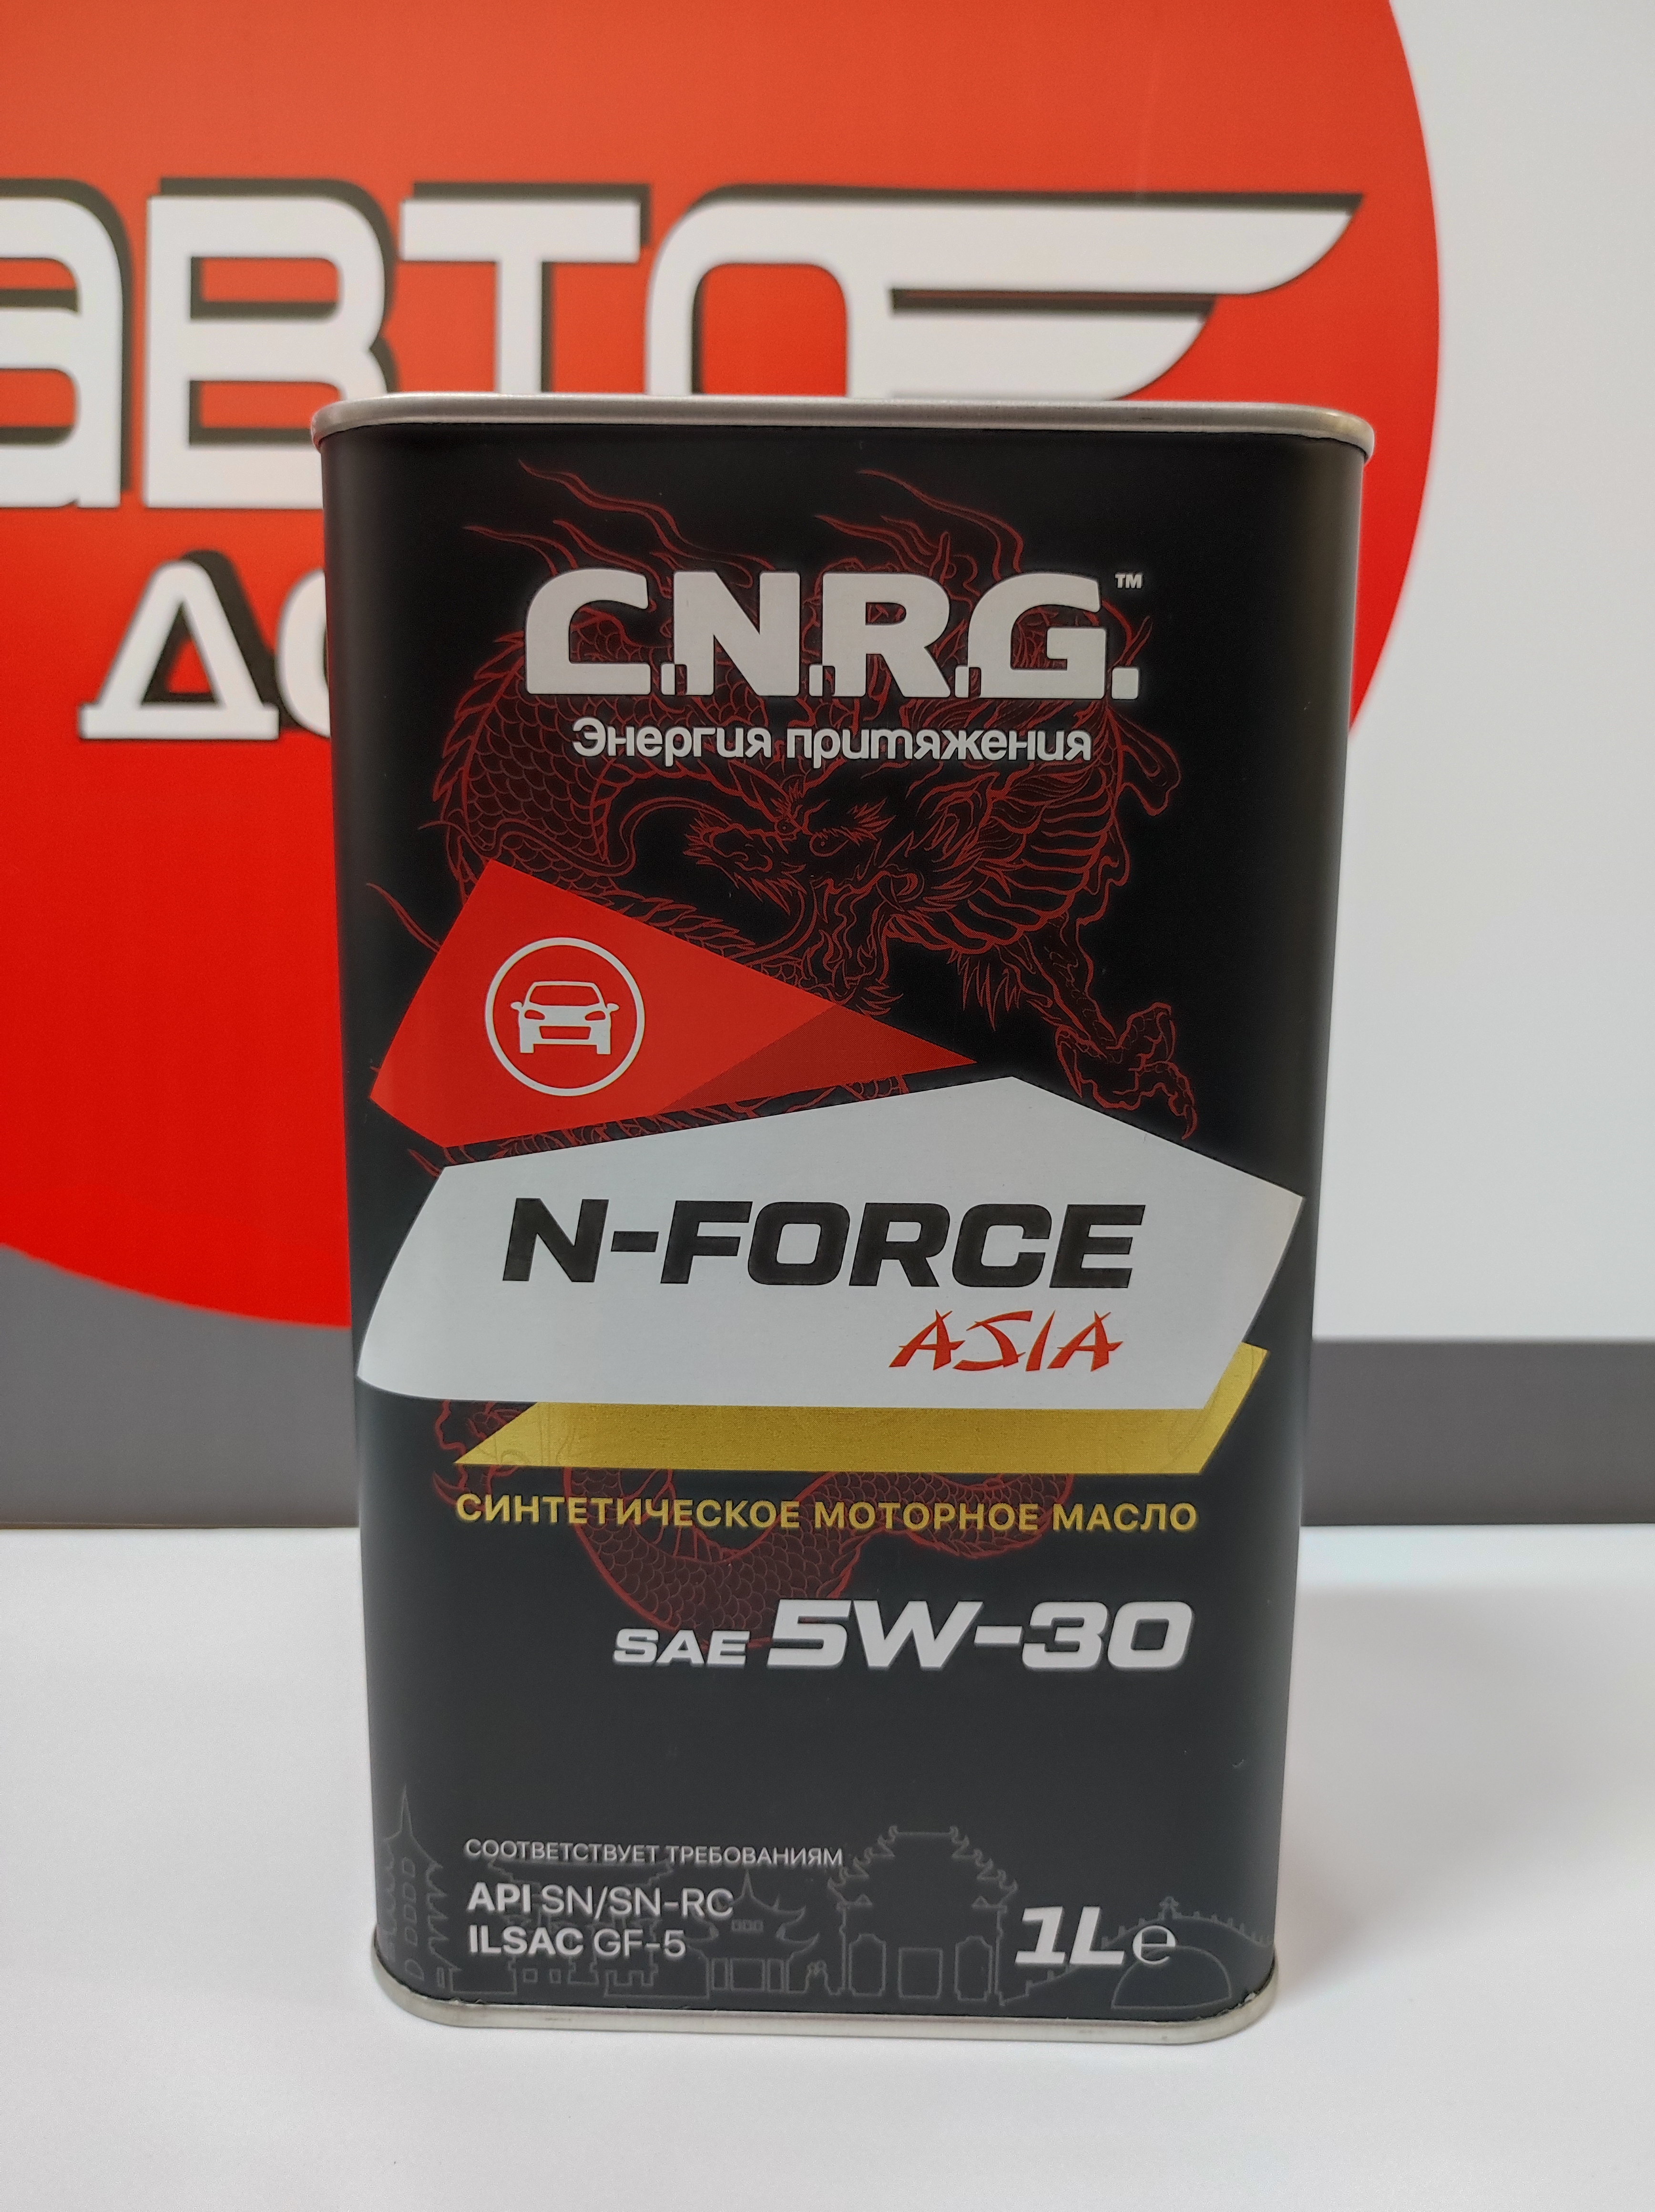 Масло моторное c.n.r.g. n-Force Asia 5w-30. CNRG Asia 5w30. CNRG N-stroke 5w30 синтетика. Моторное масло FQ 5w30 отзывы. Asia force